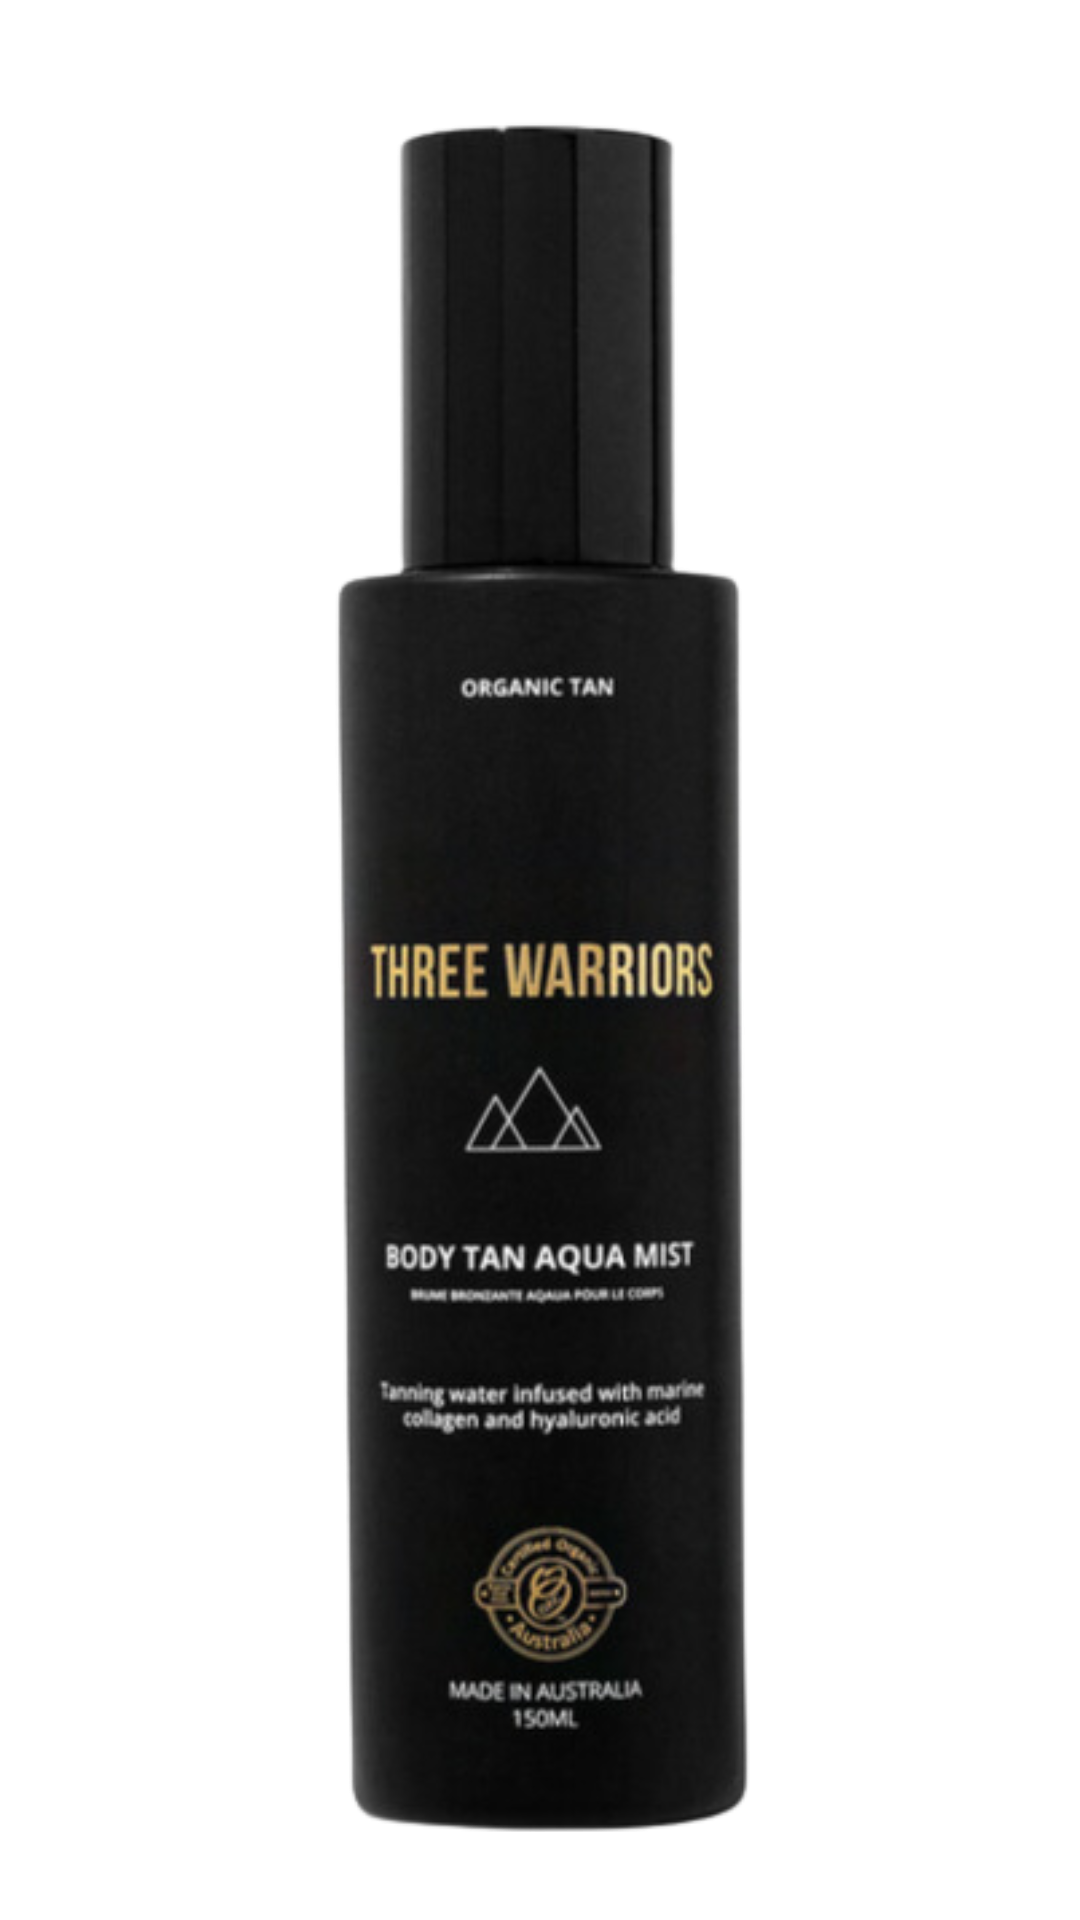 Three Warriors Body Tan Aqua Mist 150g